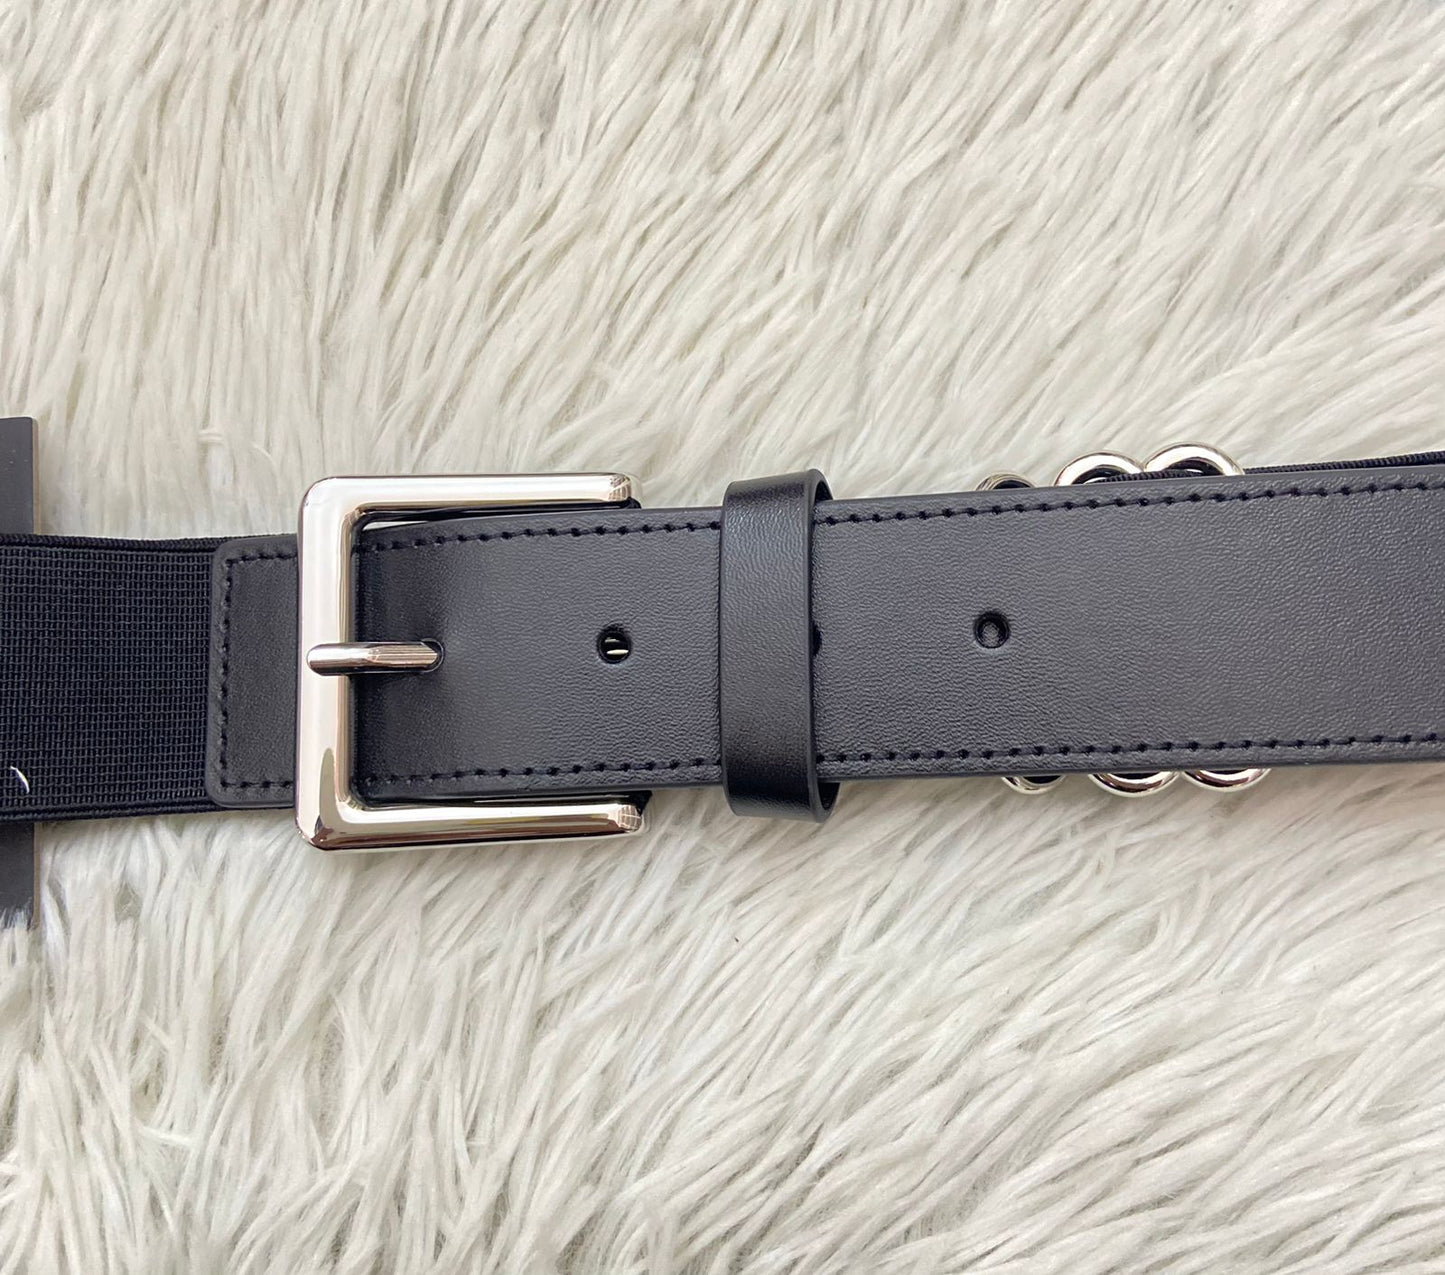 Correa/ Cinturón elástico UNDER ARMOUR original, negra lisa.